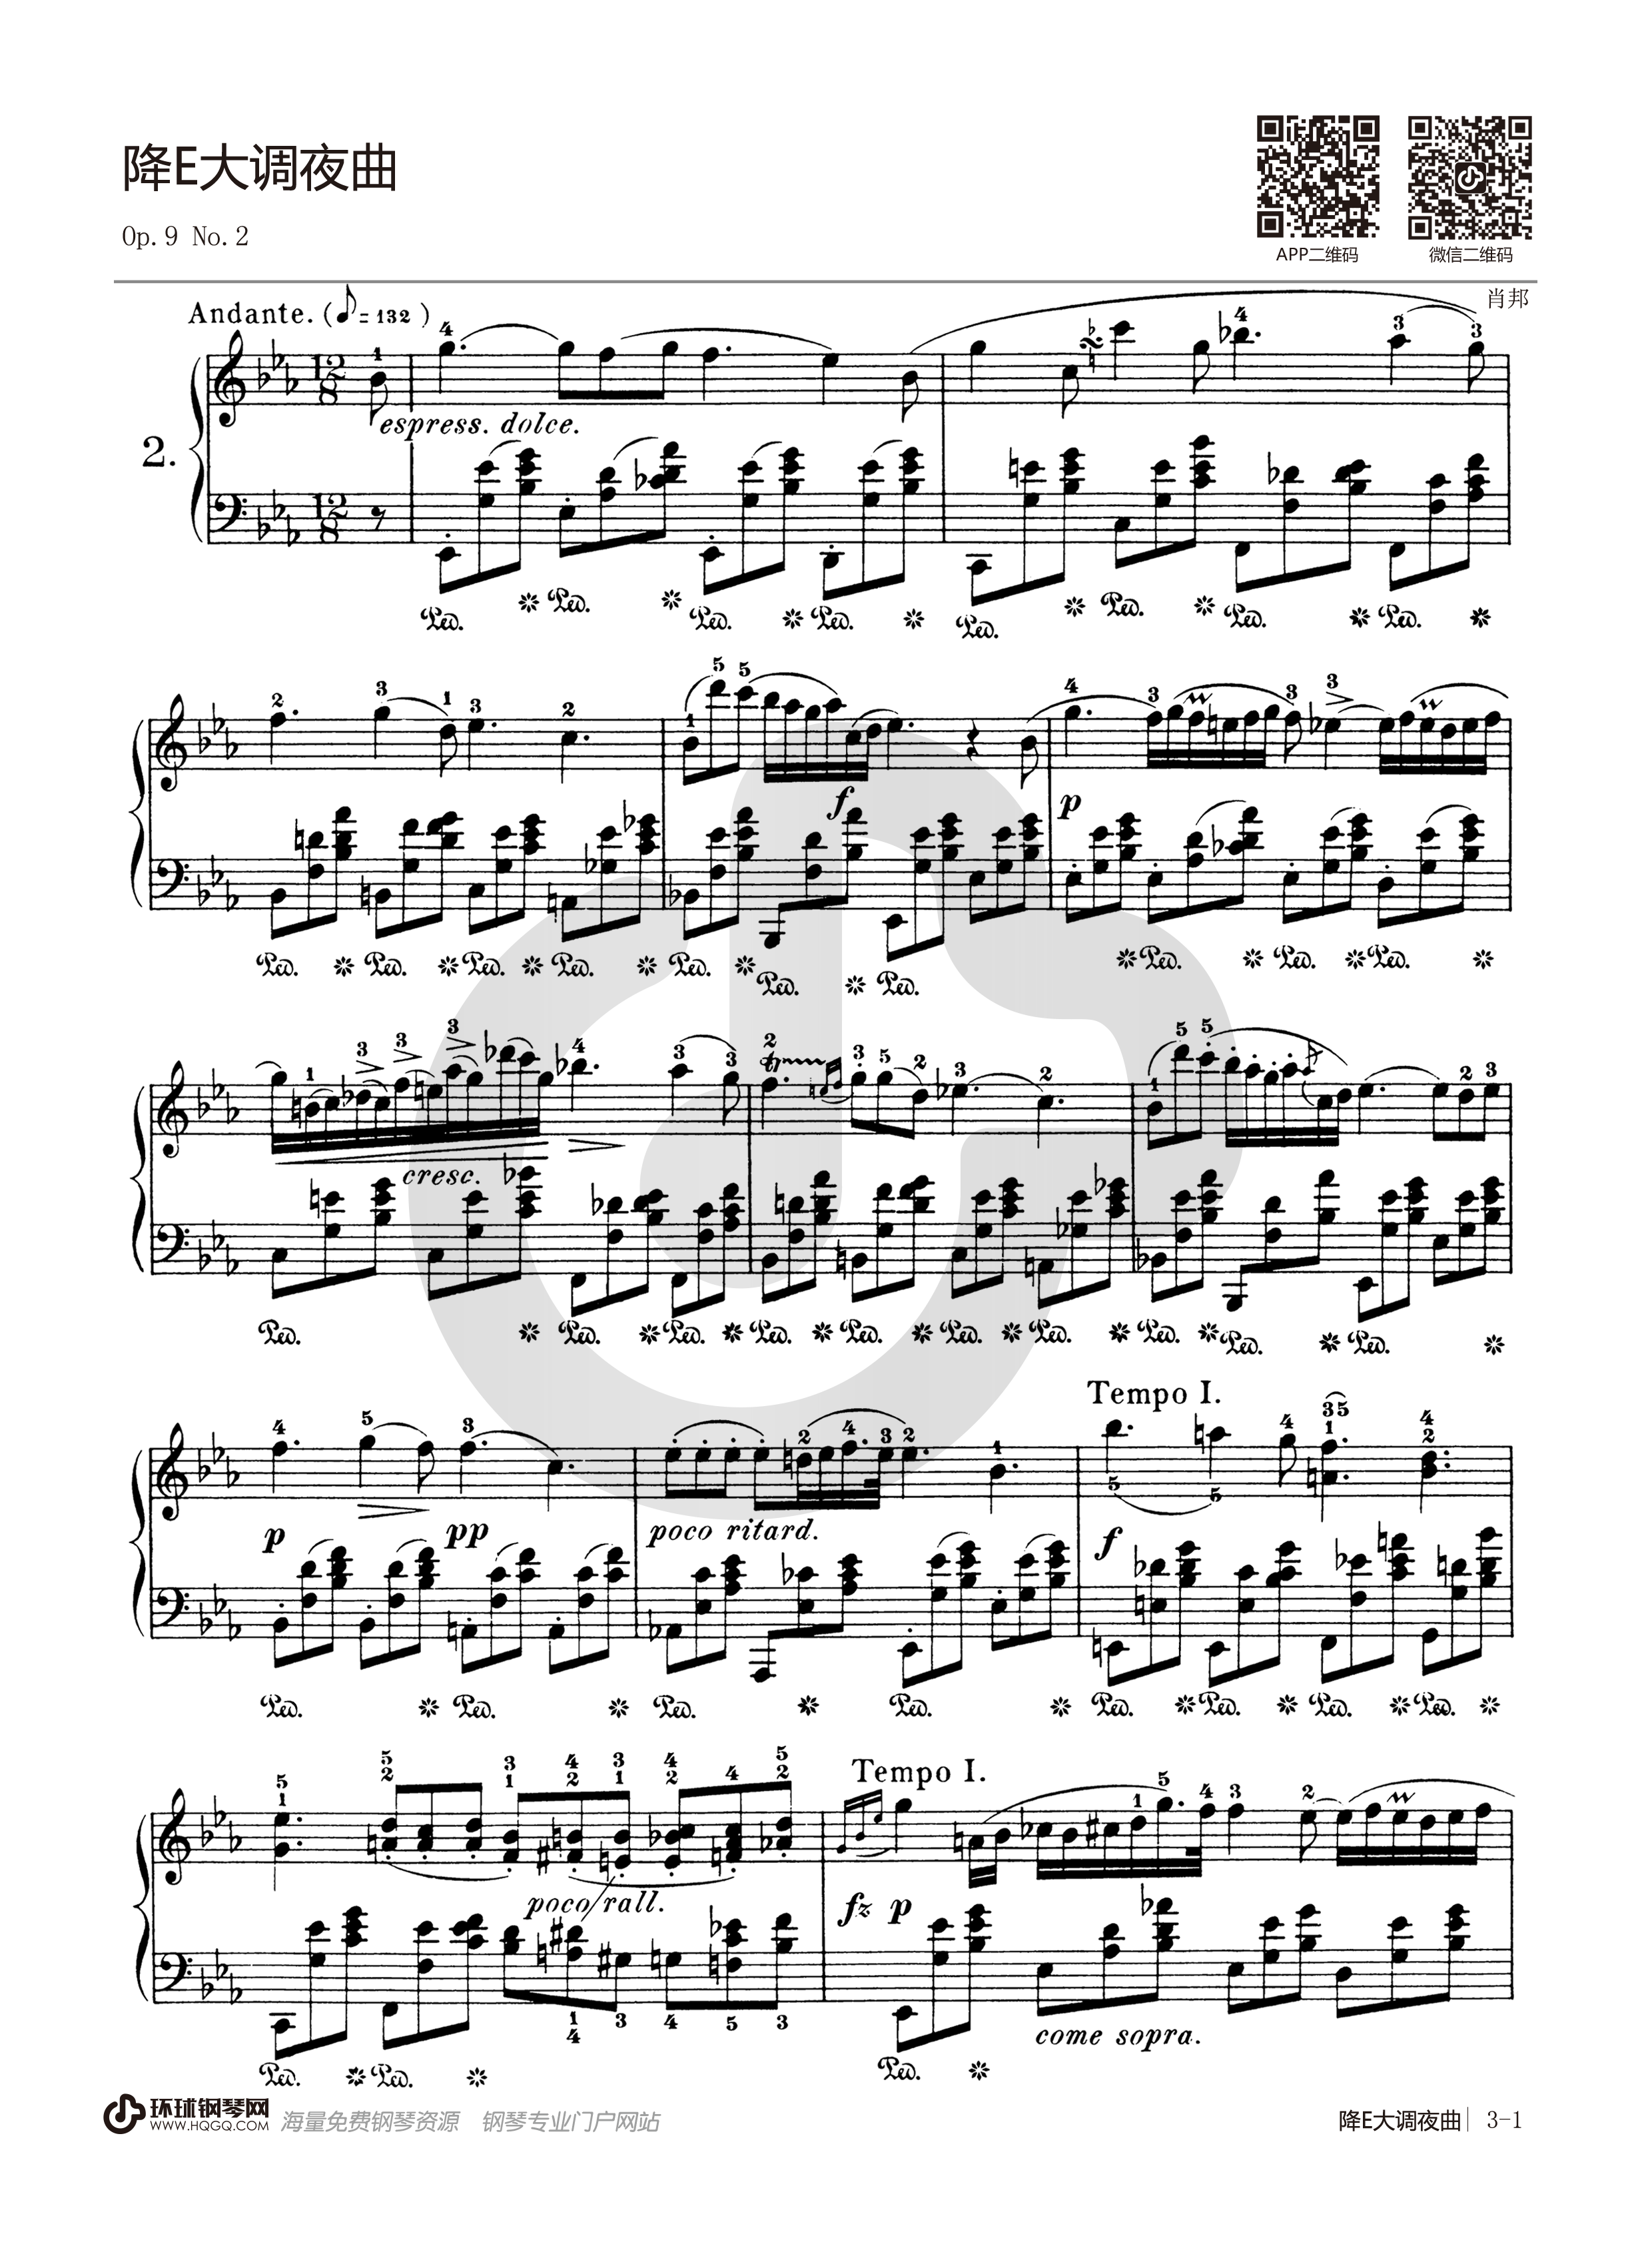 《肖邦夜曲,钢琴谱》Op.27,No.2，官方校正版,肖邦|弹琴吧|钢琴谱|吉他谱|钢琴曲|乐谱|五线谱|高清免费下载|蛐蛐钢琴网